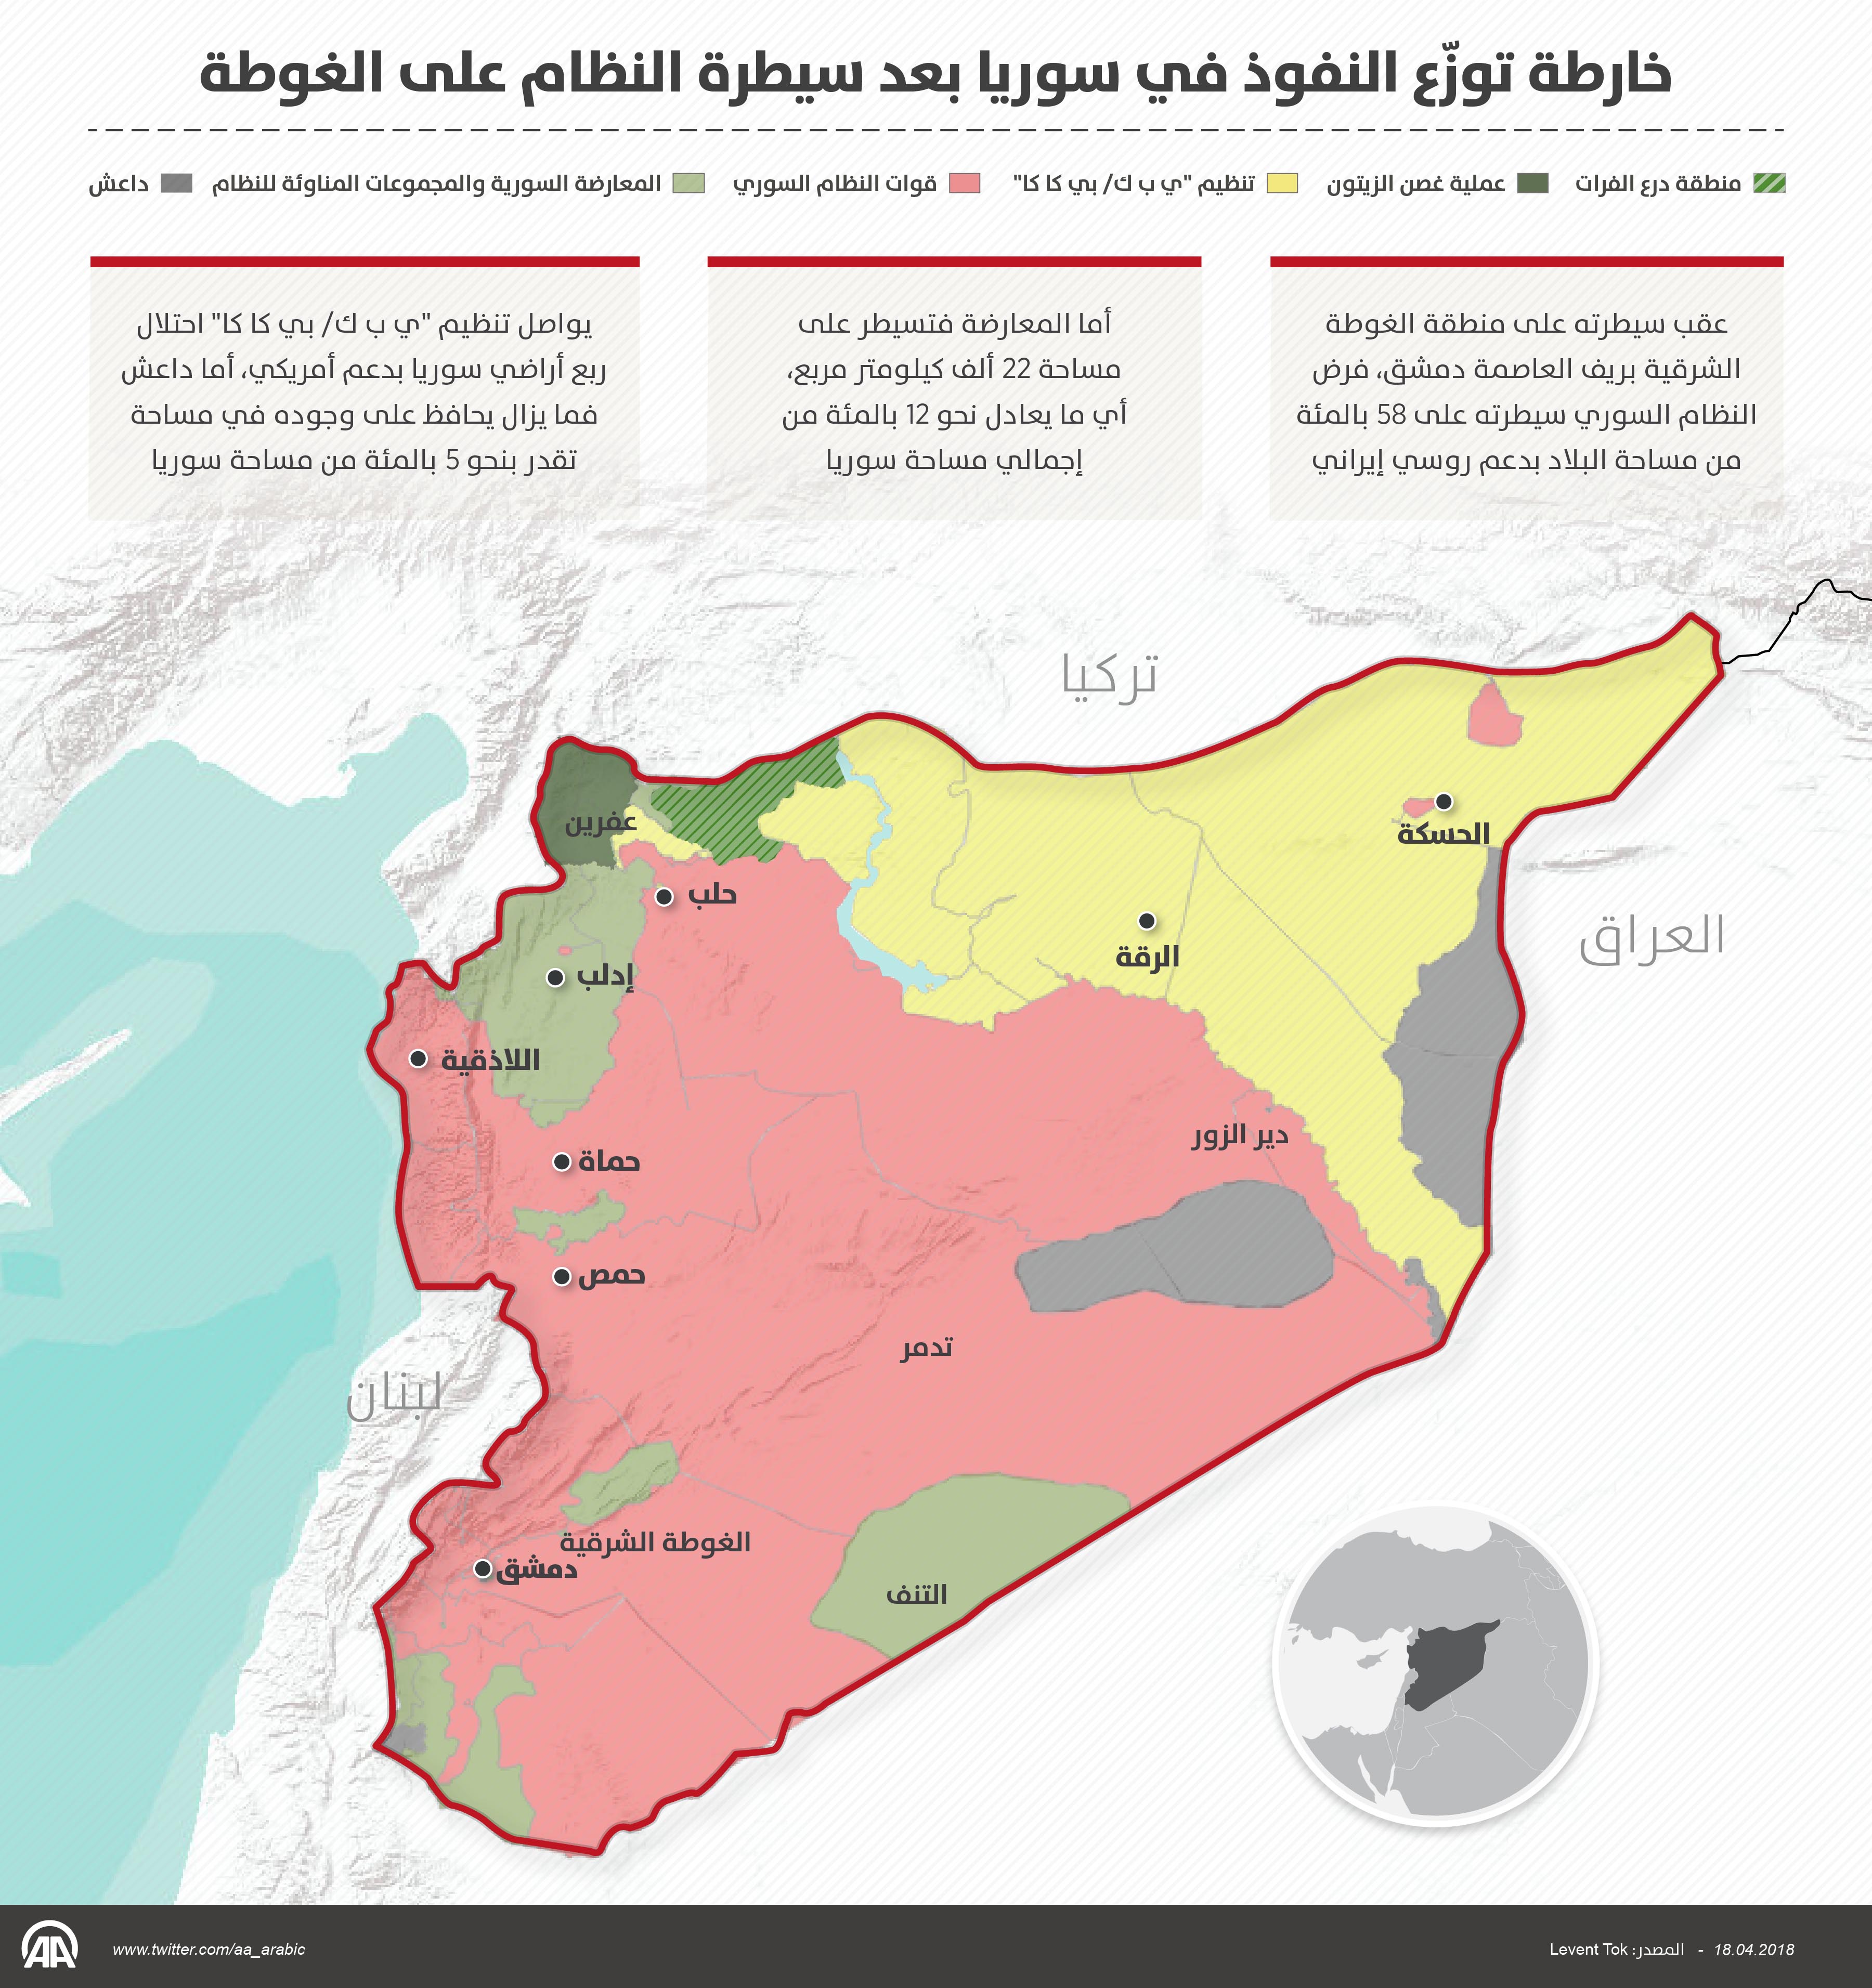 خارطة توزّع النفوذ في سوريا بعد سيطرة النظام على الغوطة 